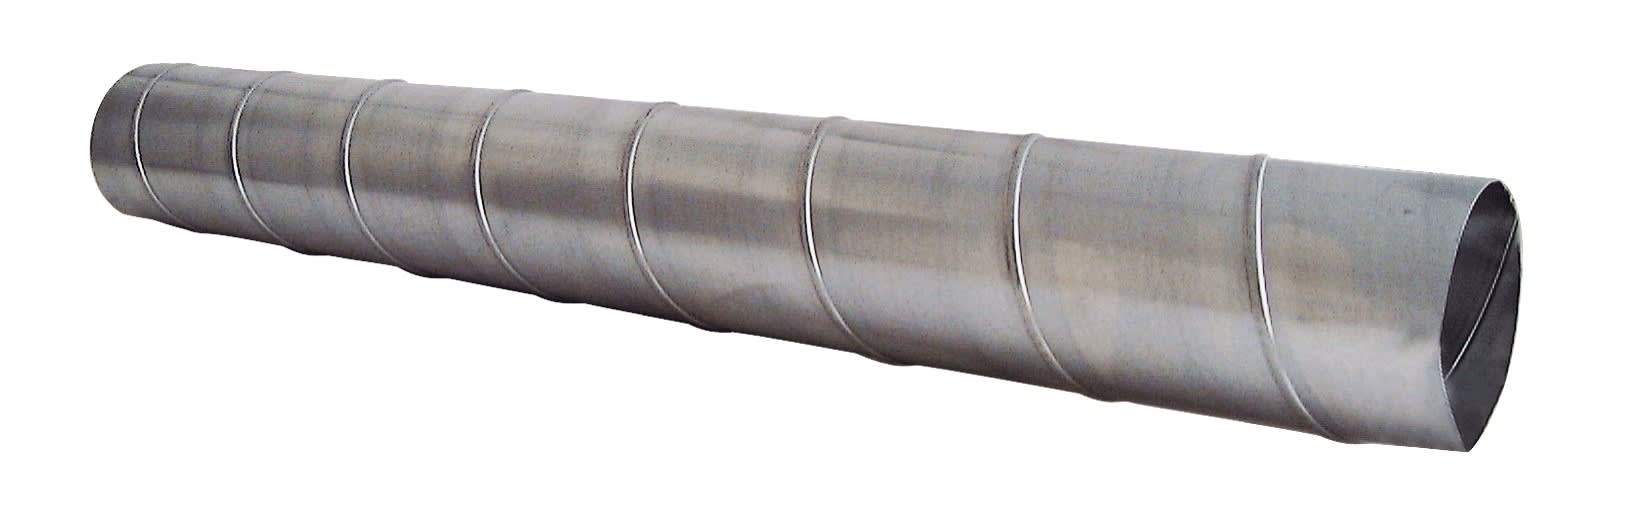 S&P - Conduit spiralé acier galvanisé, D 100 mm, longueur 3 m